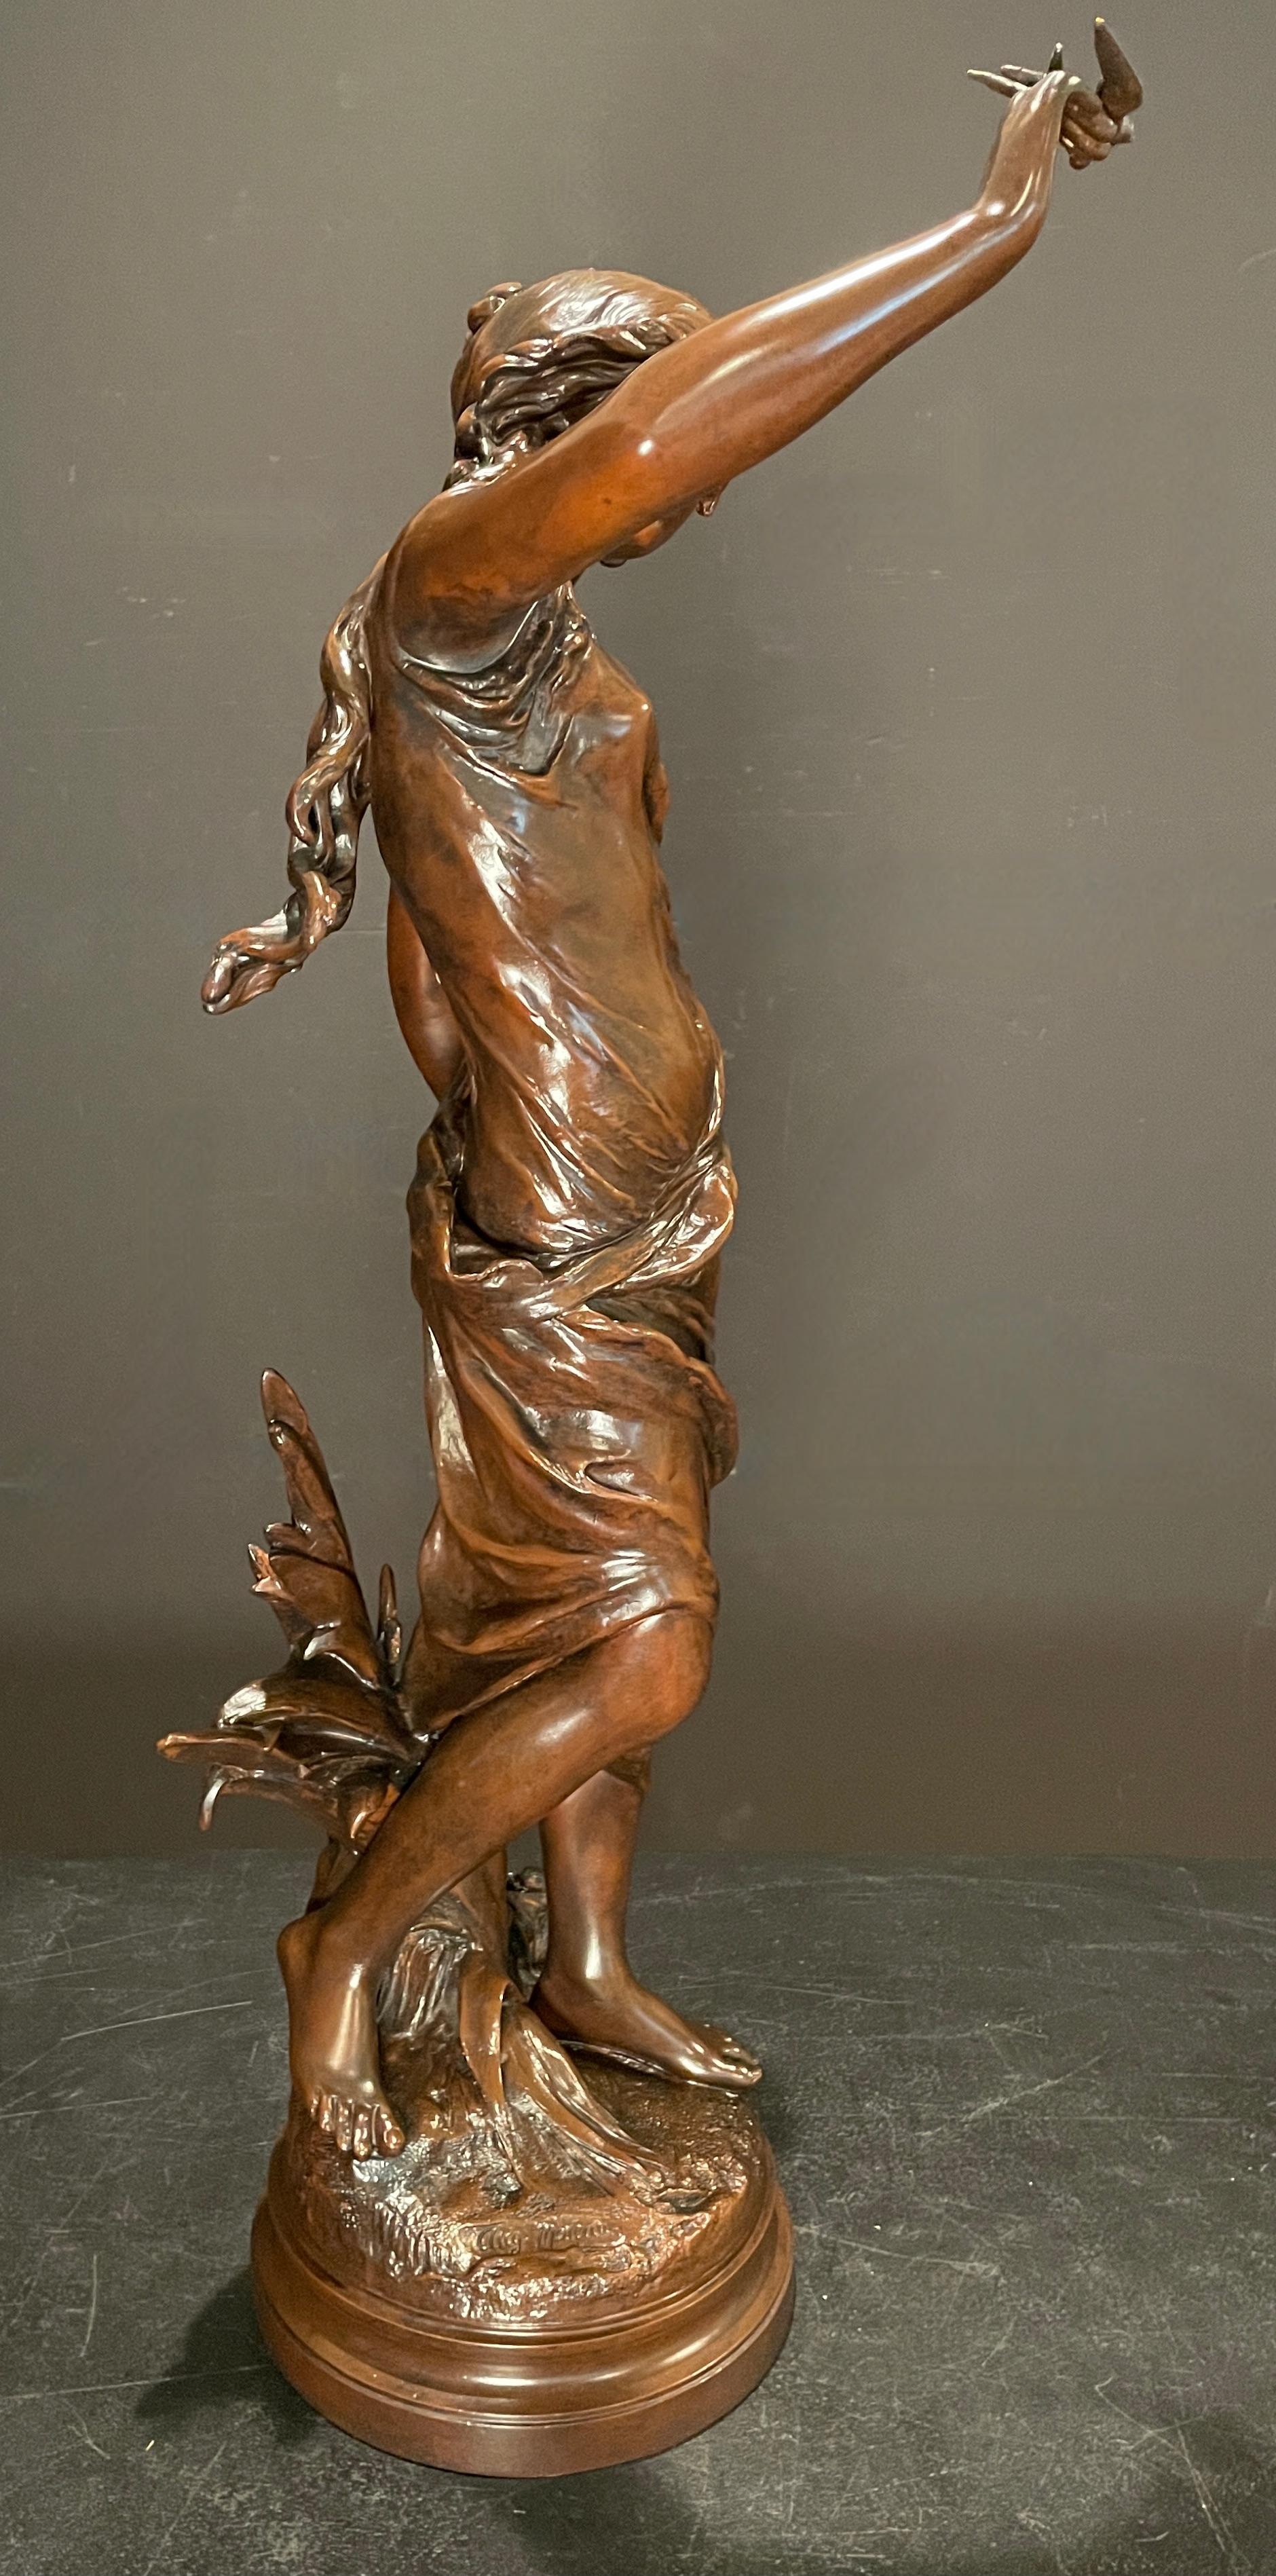 Grande sculpture française du XIXe siècle d'Auguste Moreau (1834-1917) représentant une jeune fille, sur sa main repose un petit oiseau d'amour. Fabriqué en spelter, ou métal en pot, avec une belle patine chaude et riche en brun chocolat. Signature